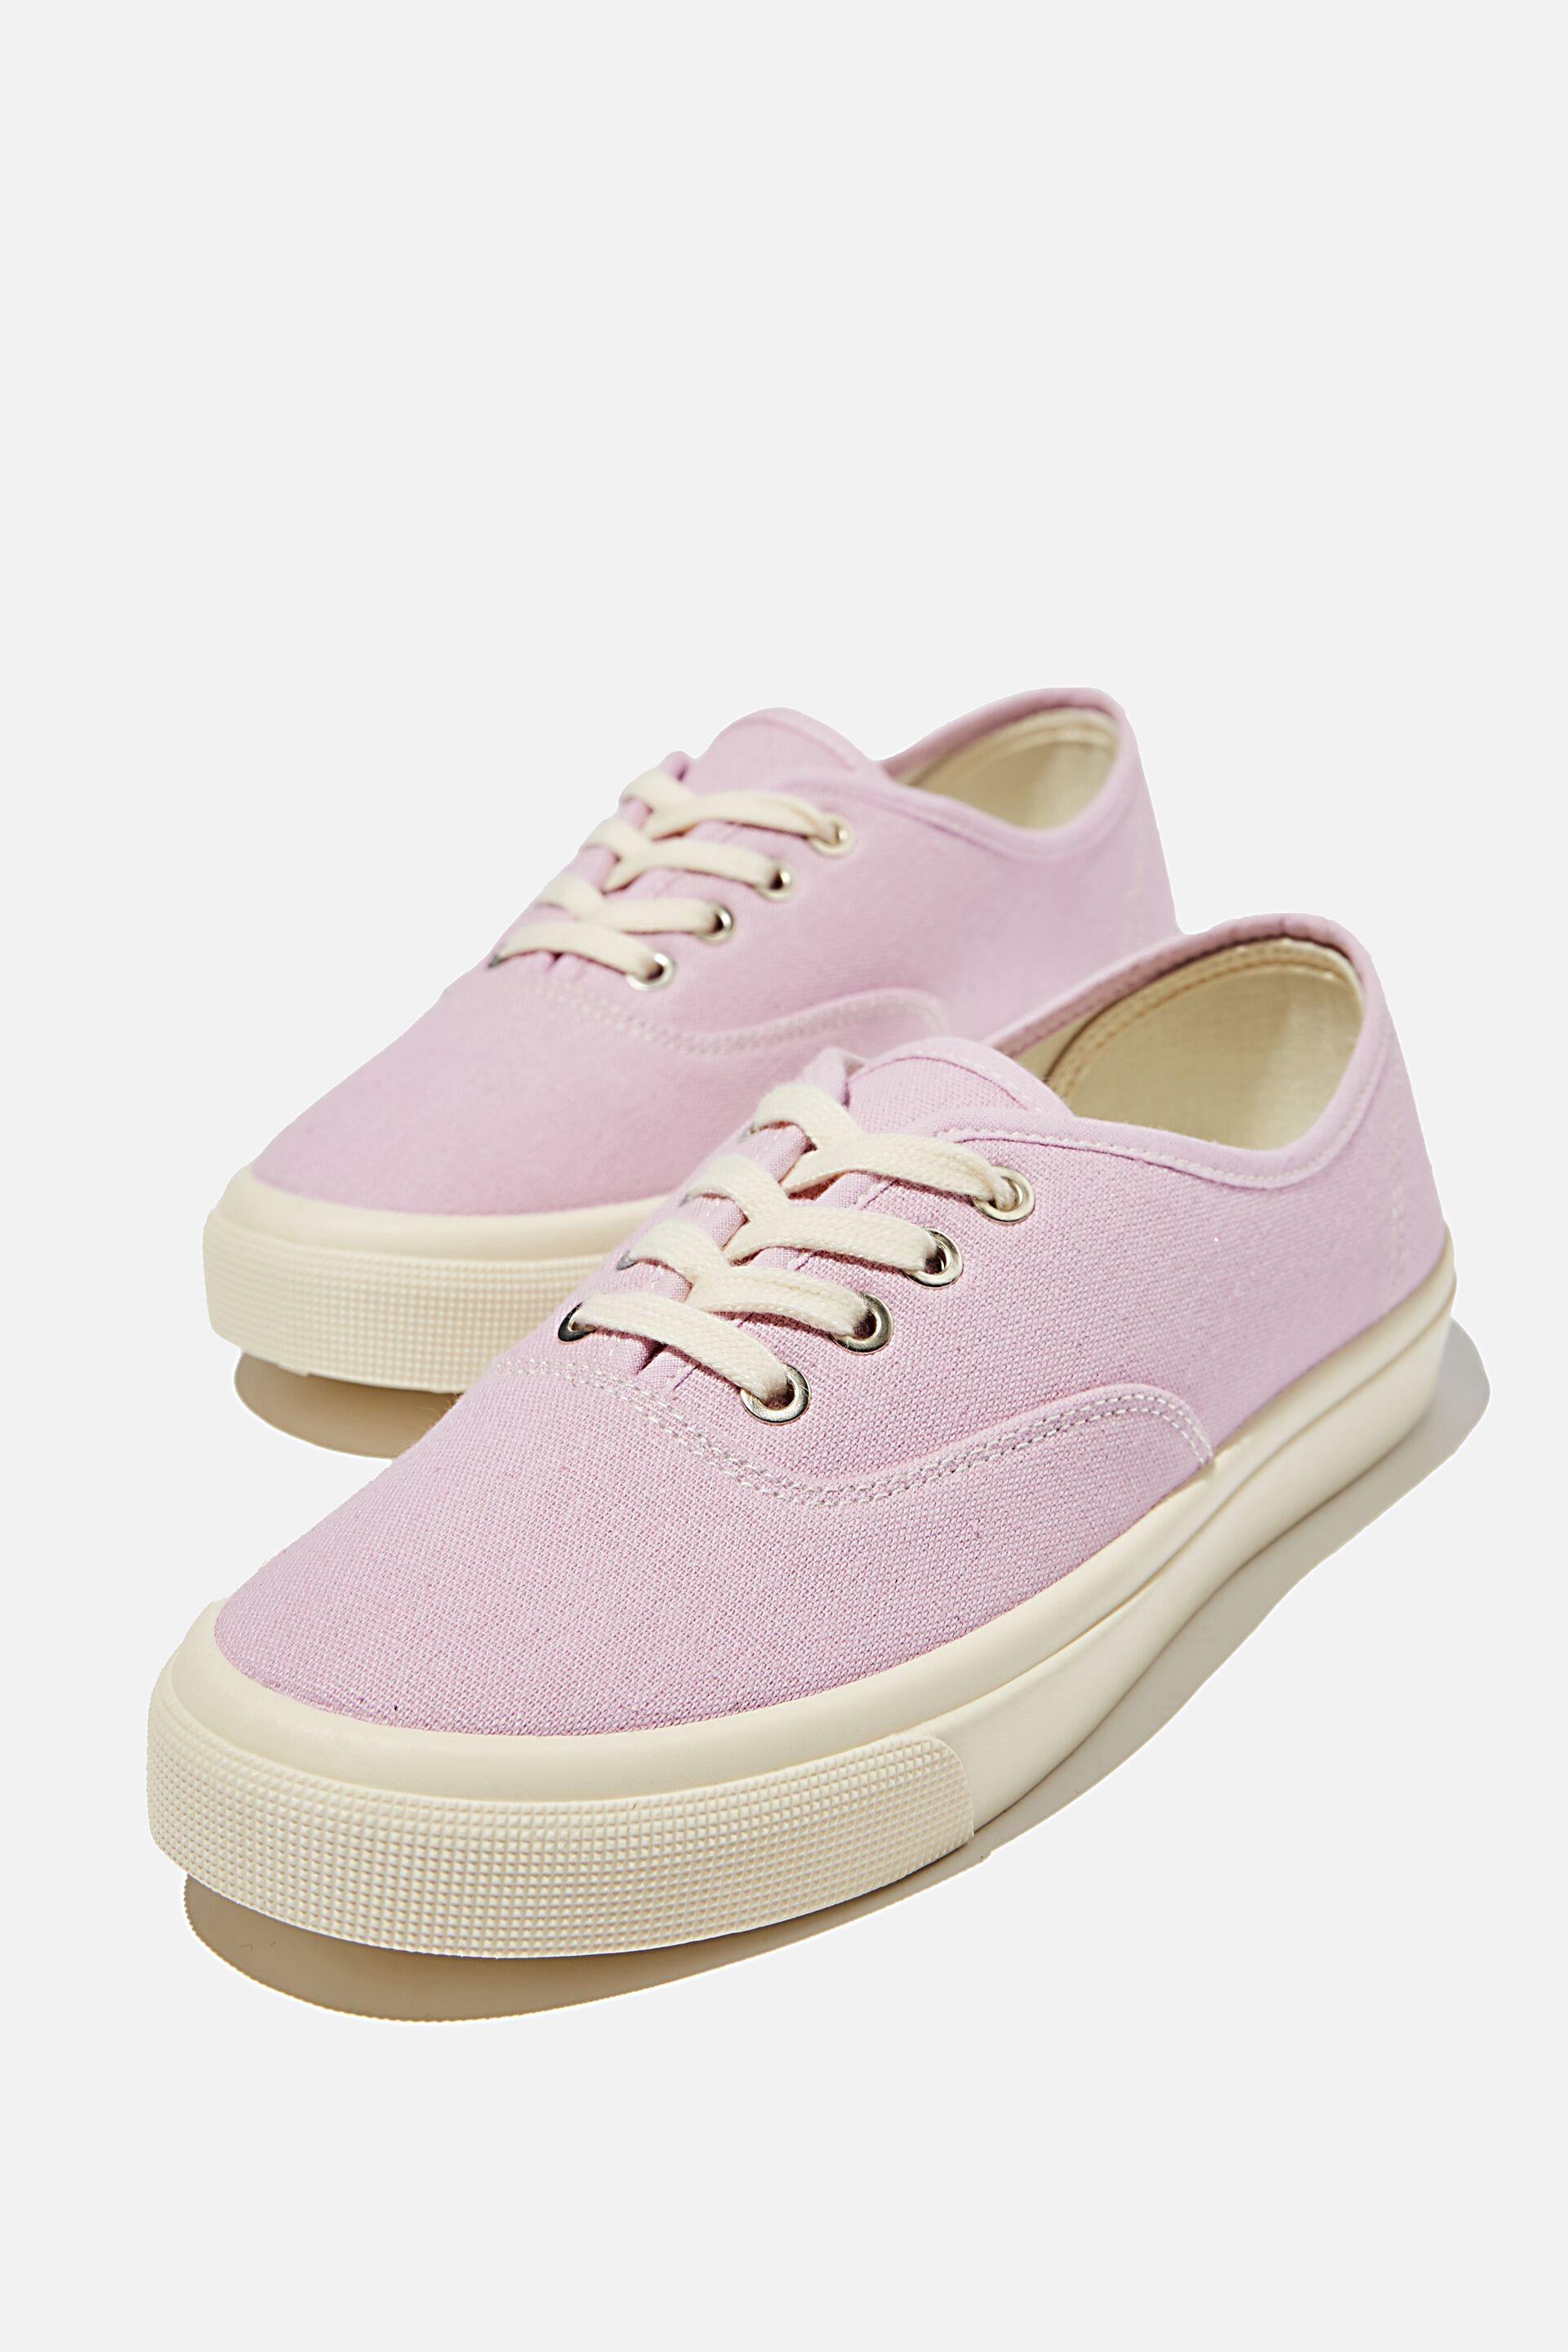 pink plimsolls sneakers